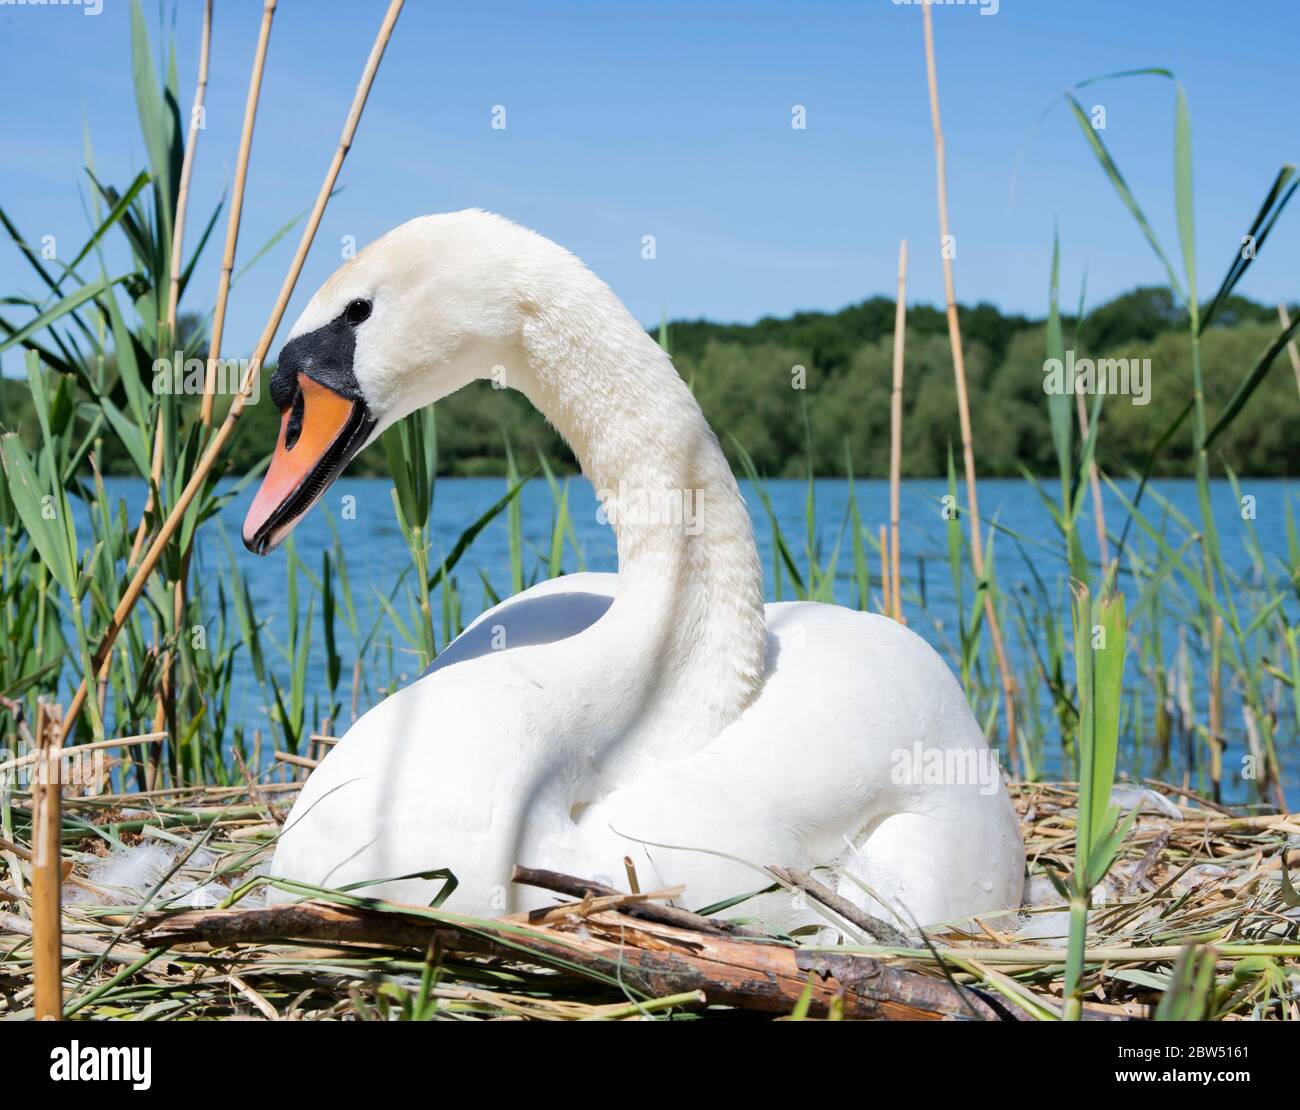 Femelle Mute Swan, Cygnus olor, incubation des œufs sur le nid, Brant Reservoir, également Welsh Harp Reservoir, Londres, Royaume-Uni Banque D'Images